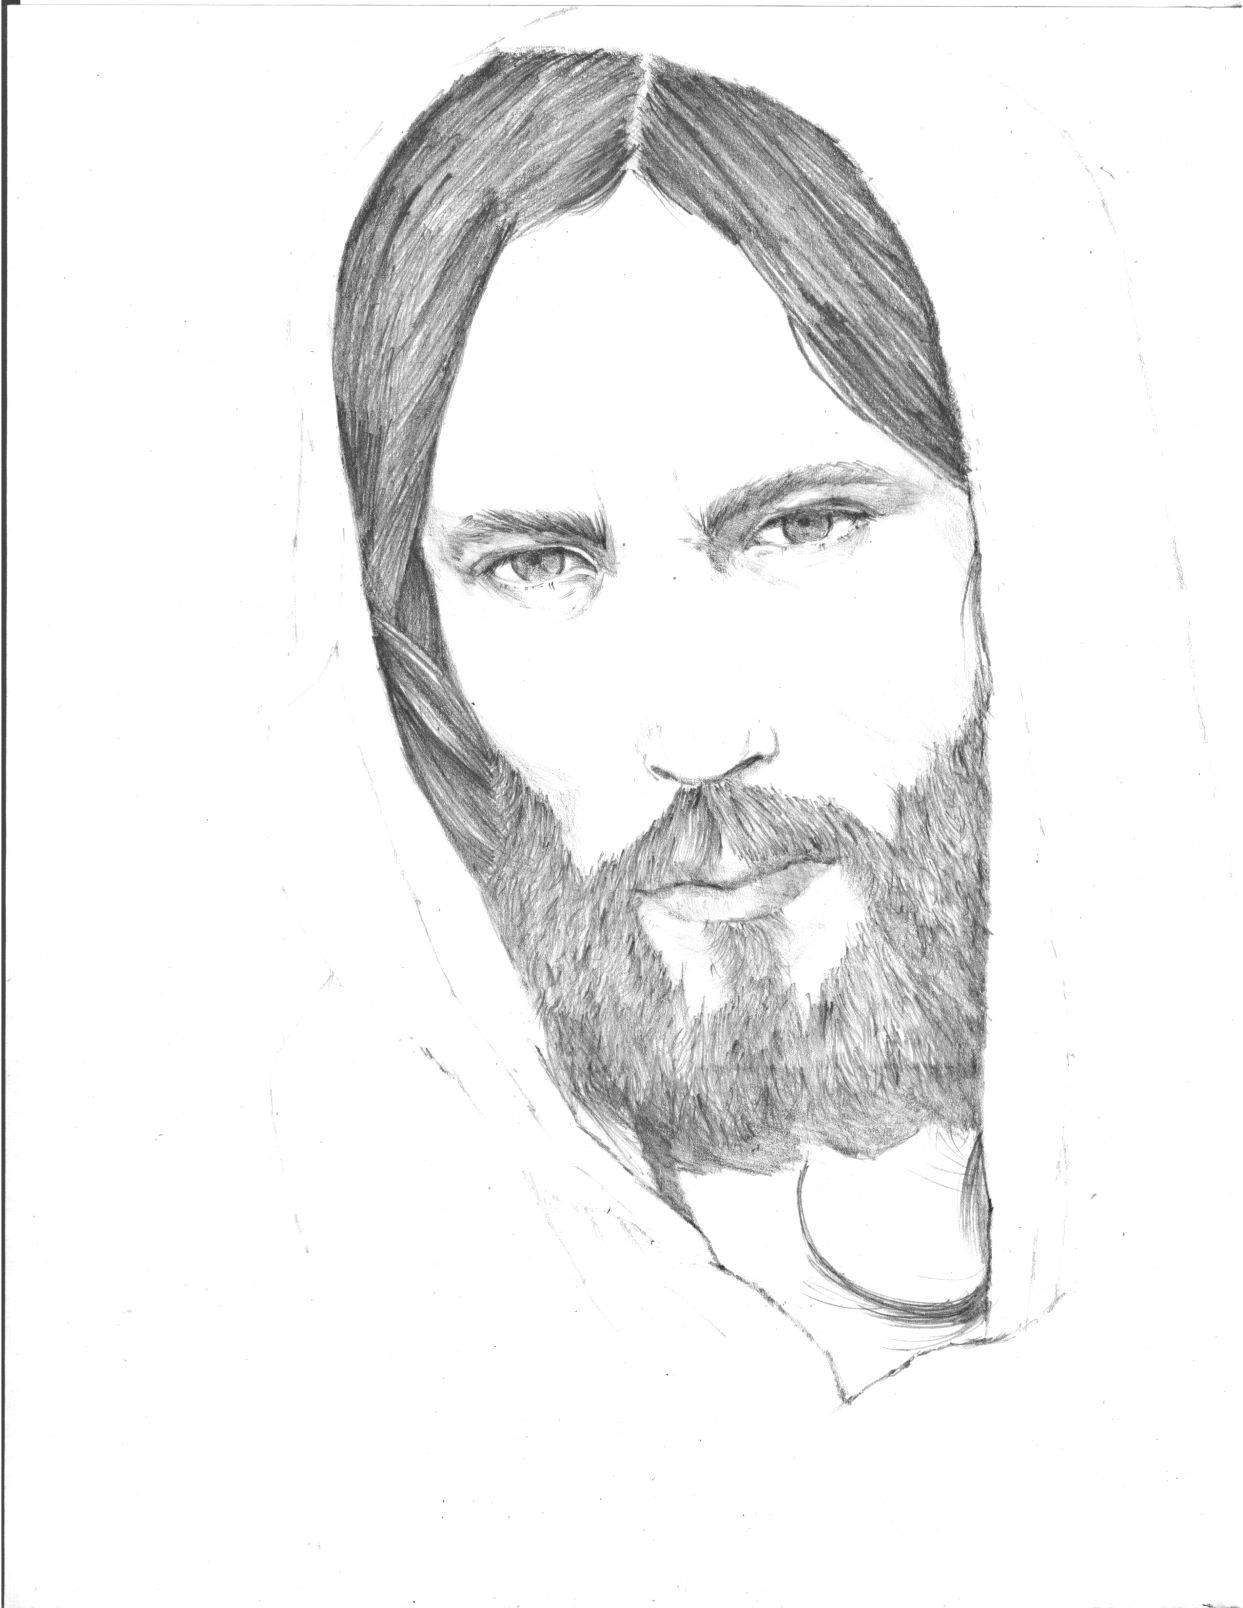 Jesus pencil drawing - work in progress /Jesús dibujo a lápiz - trabajo en proceso — Hive